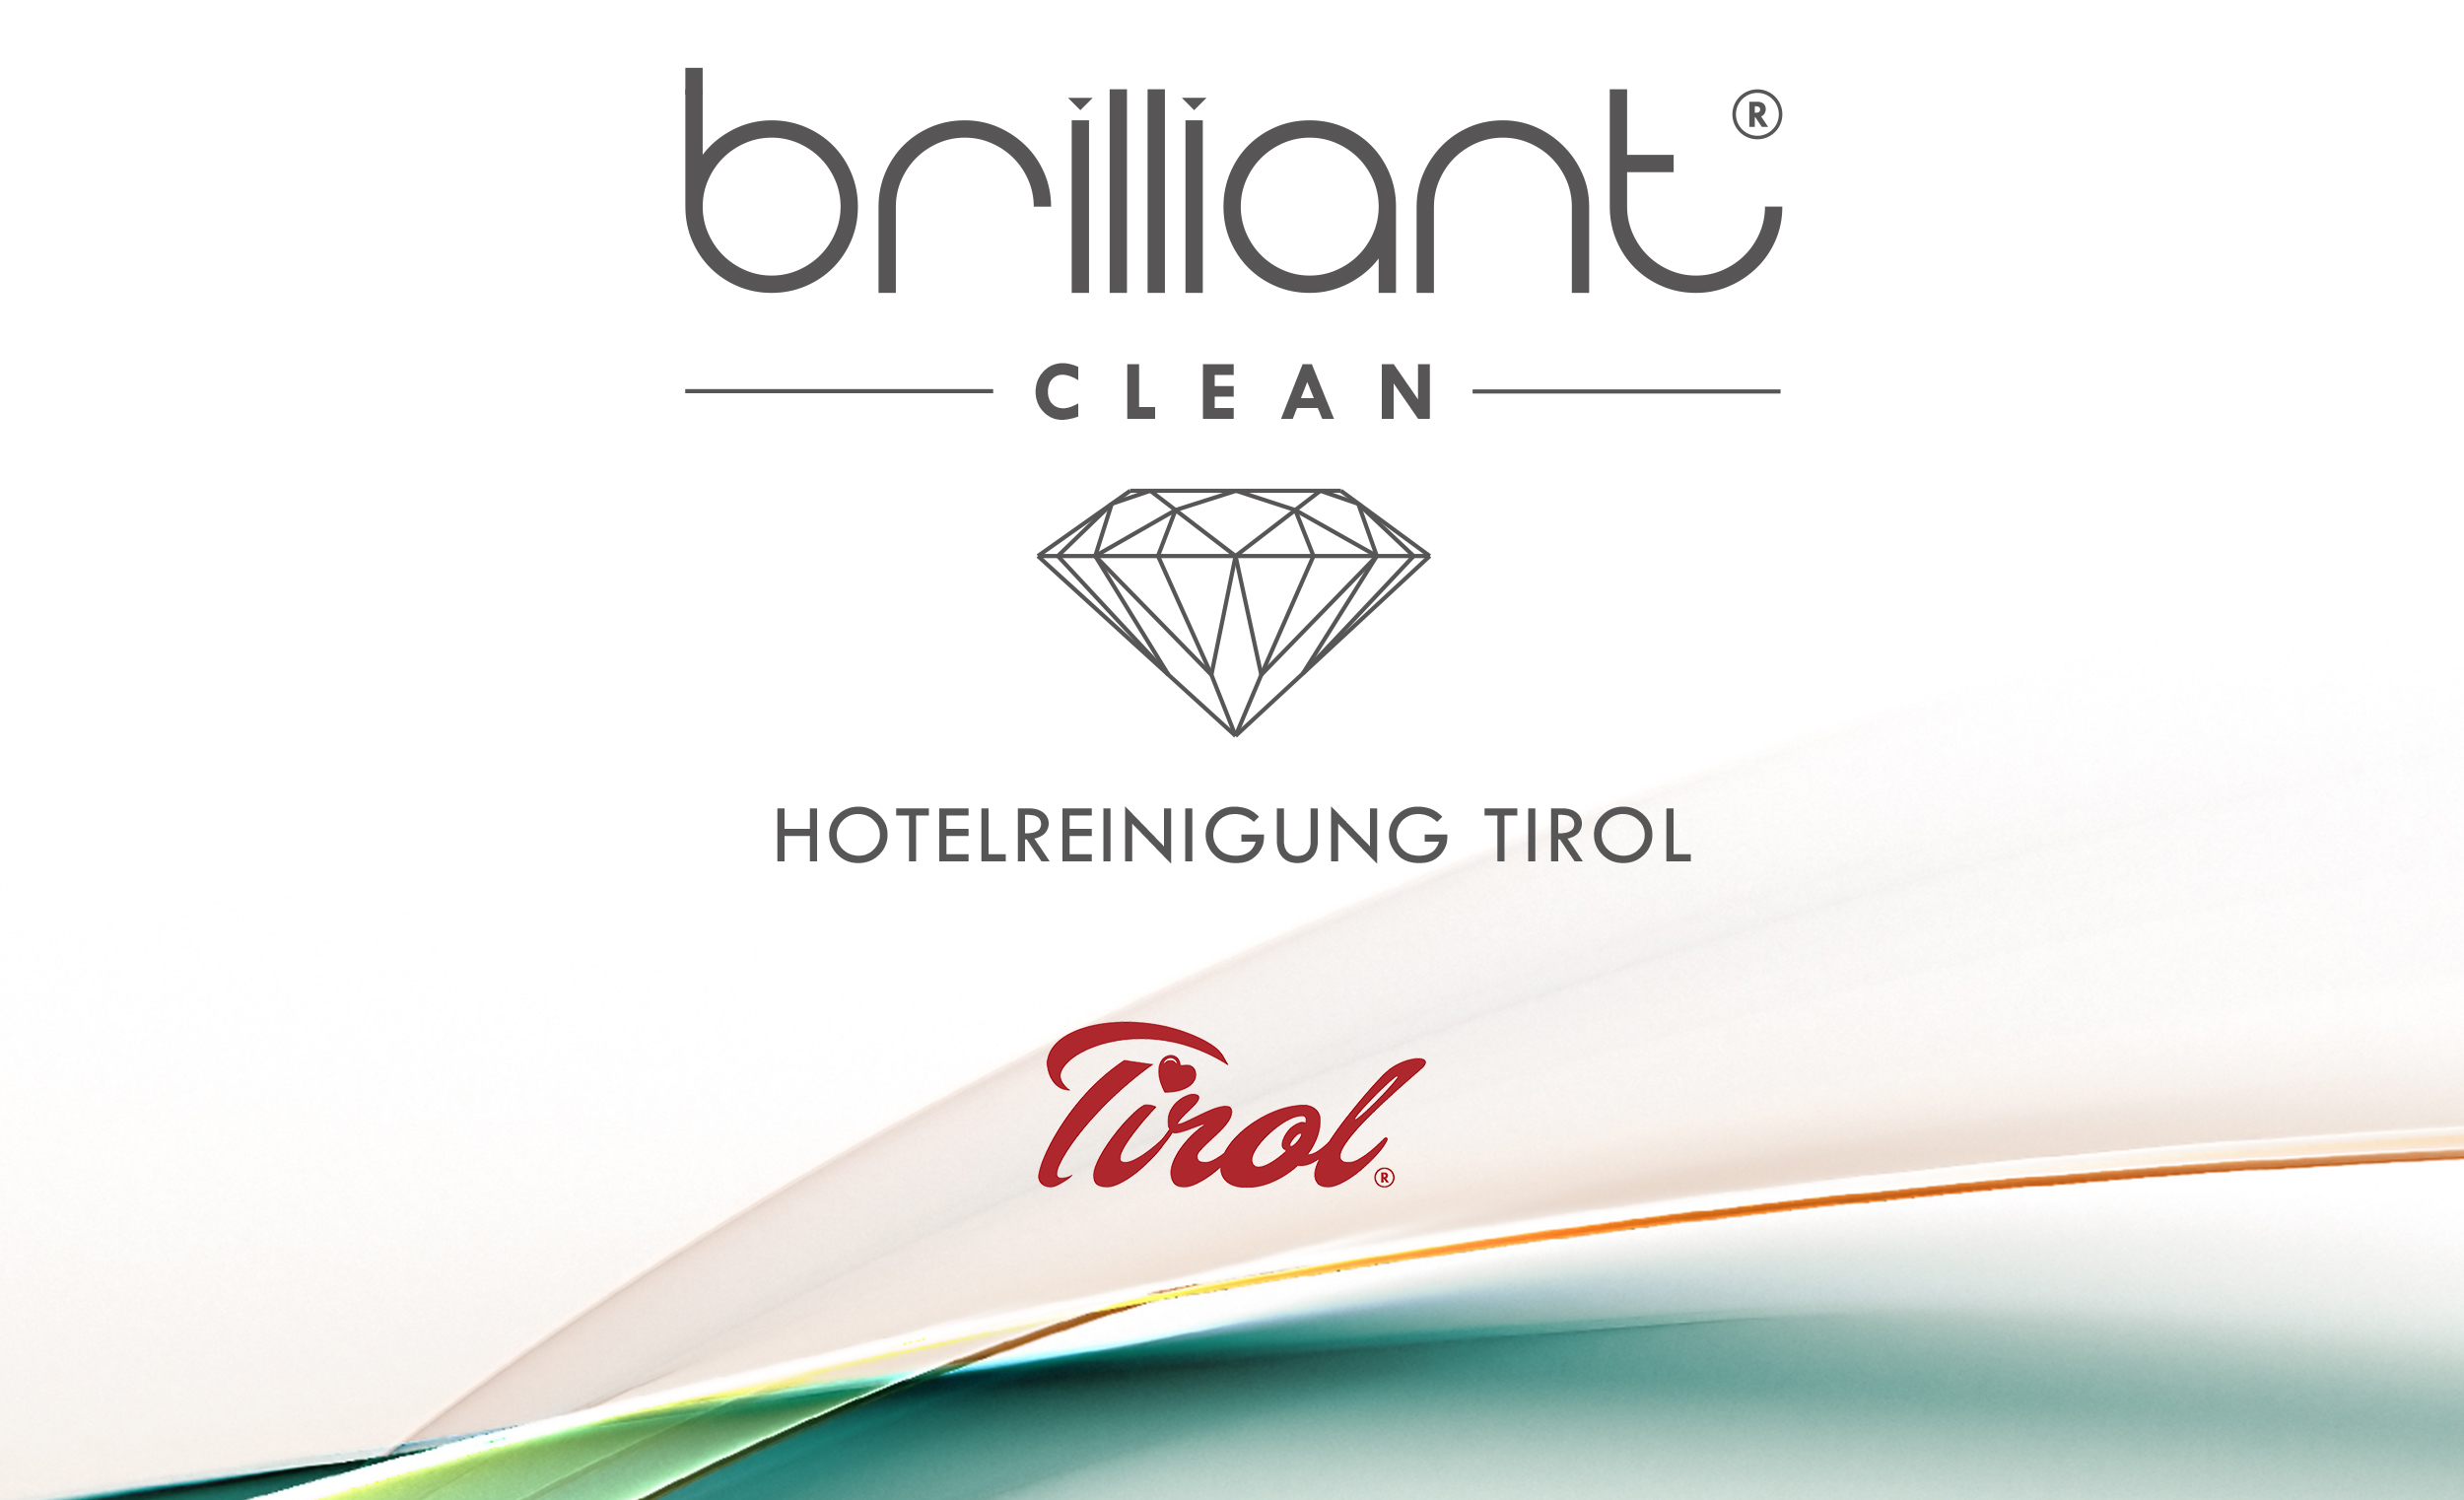 Hotelreinigung Tirol - Brilliant